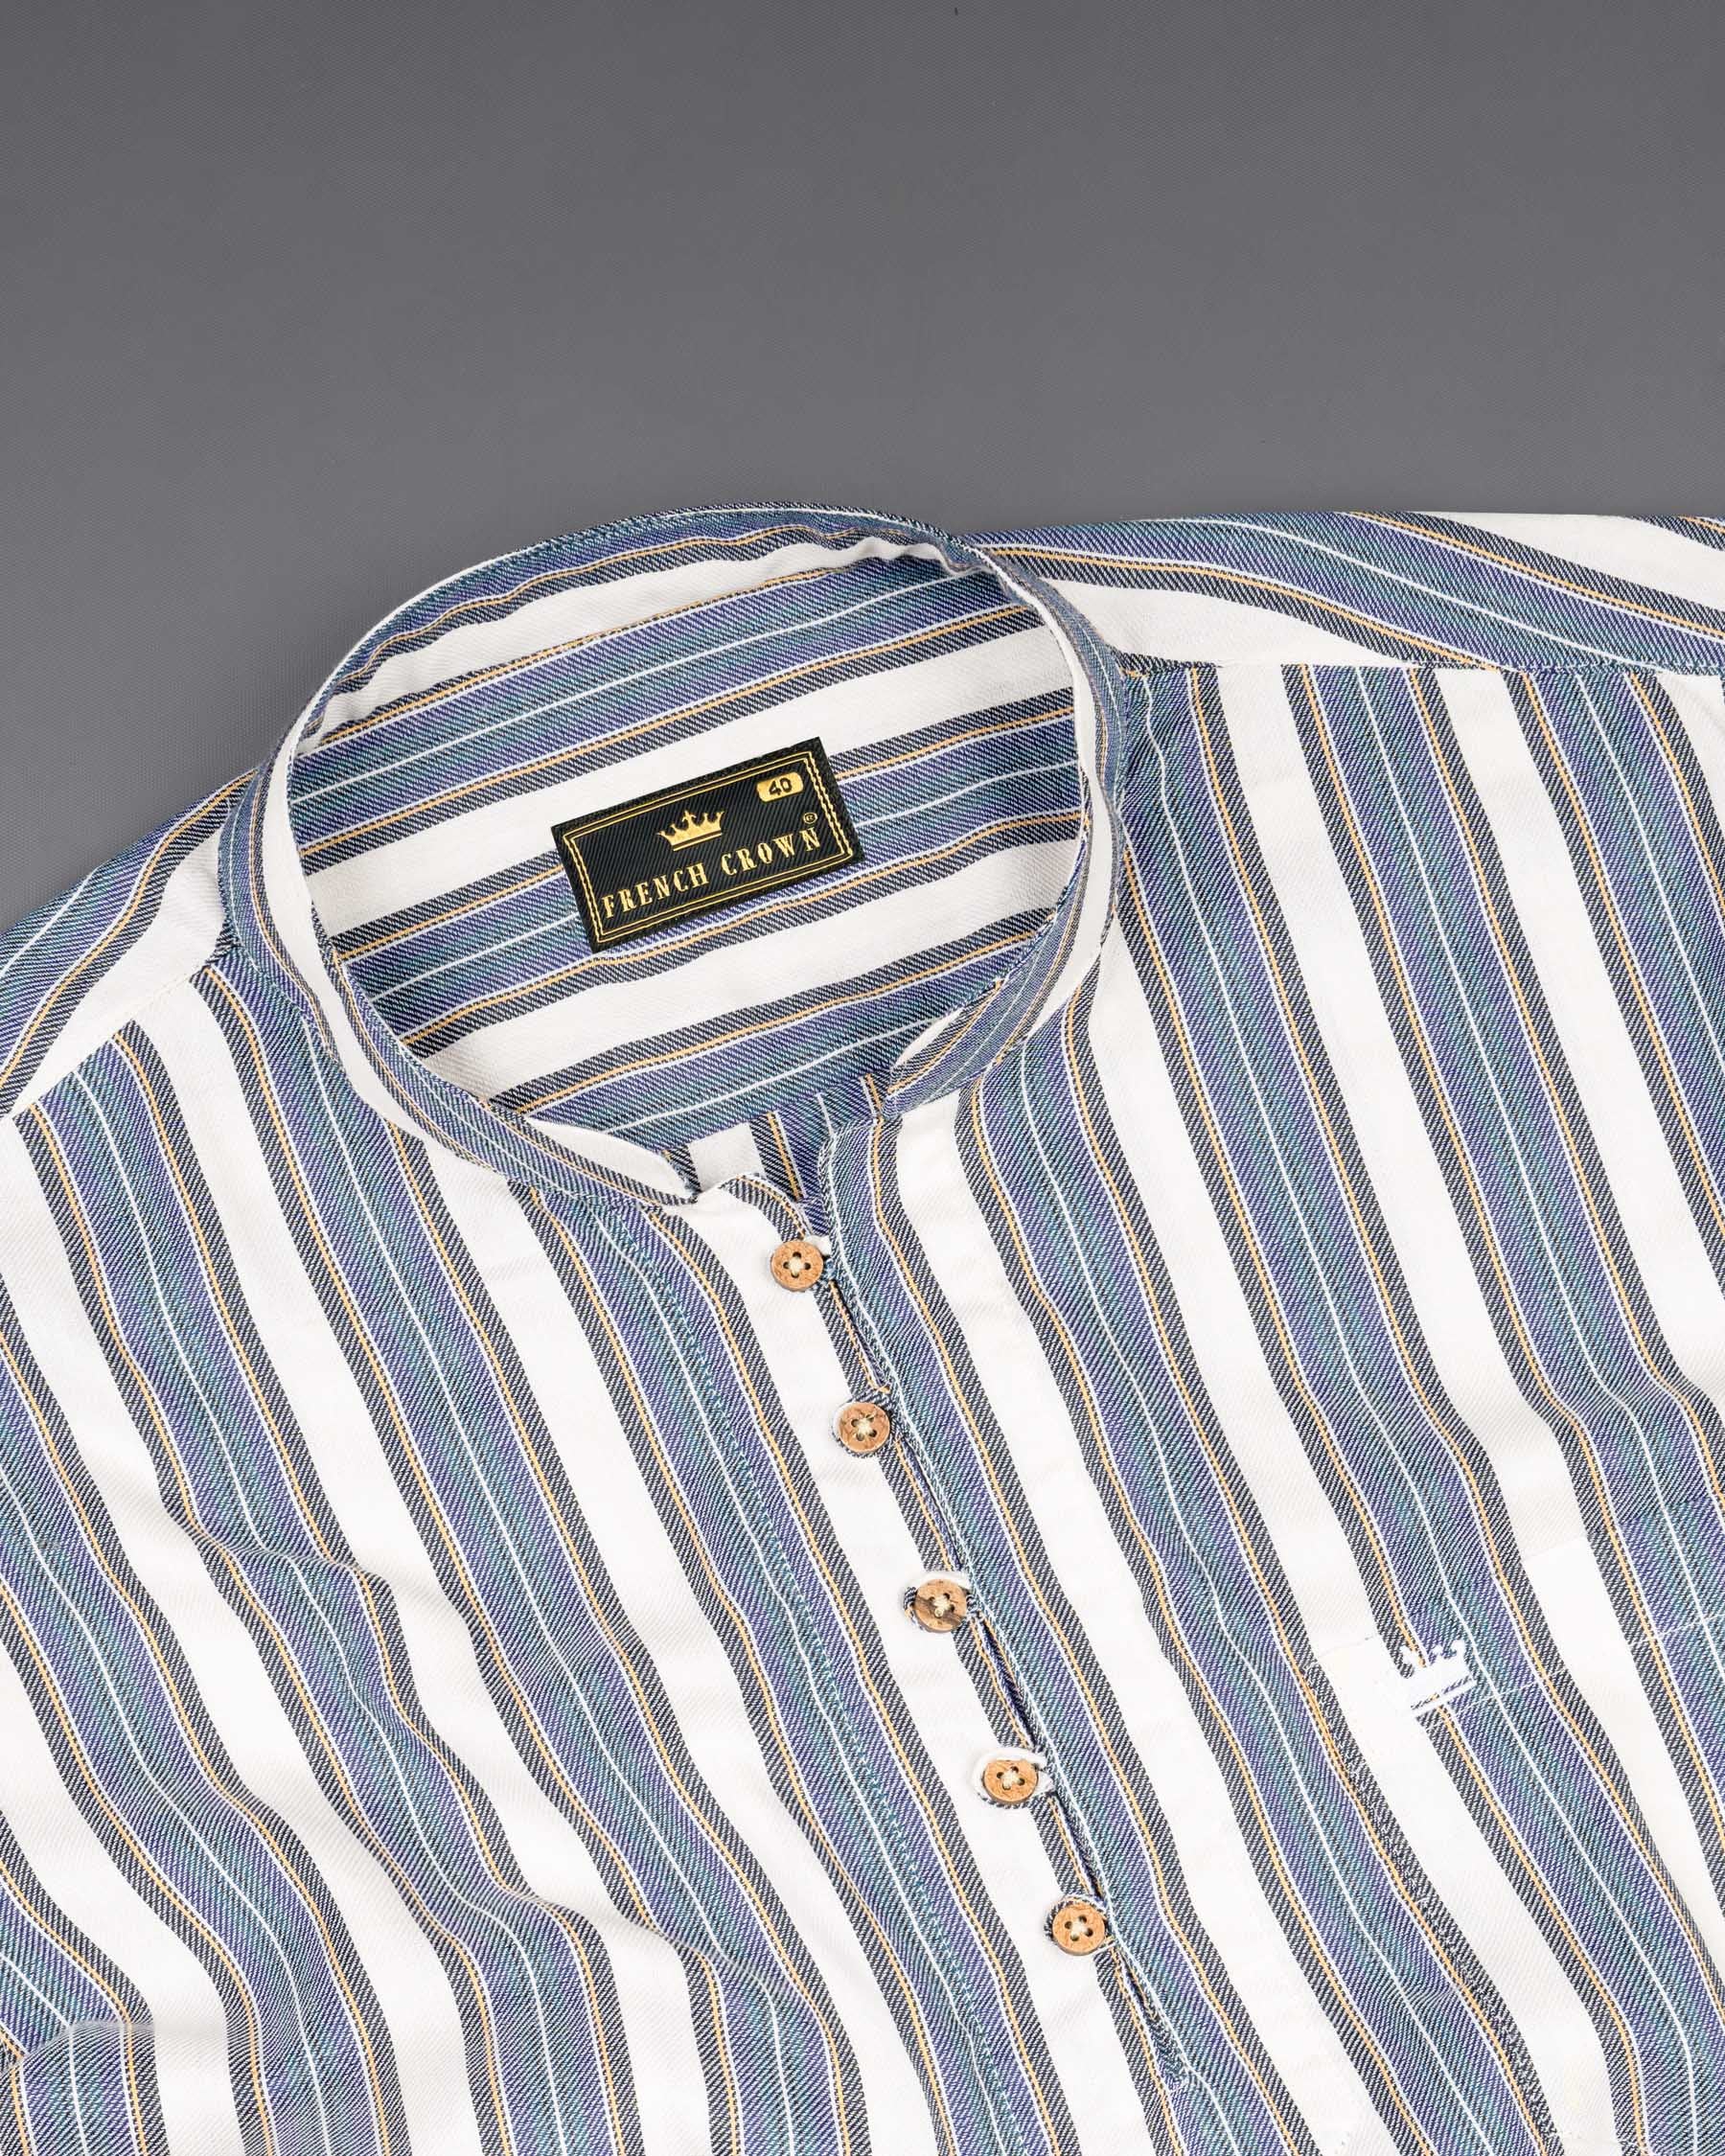 Soapstone White and denim blue Striped Twill Premium Cotton Kurta Shirt